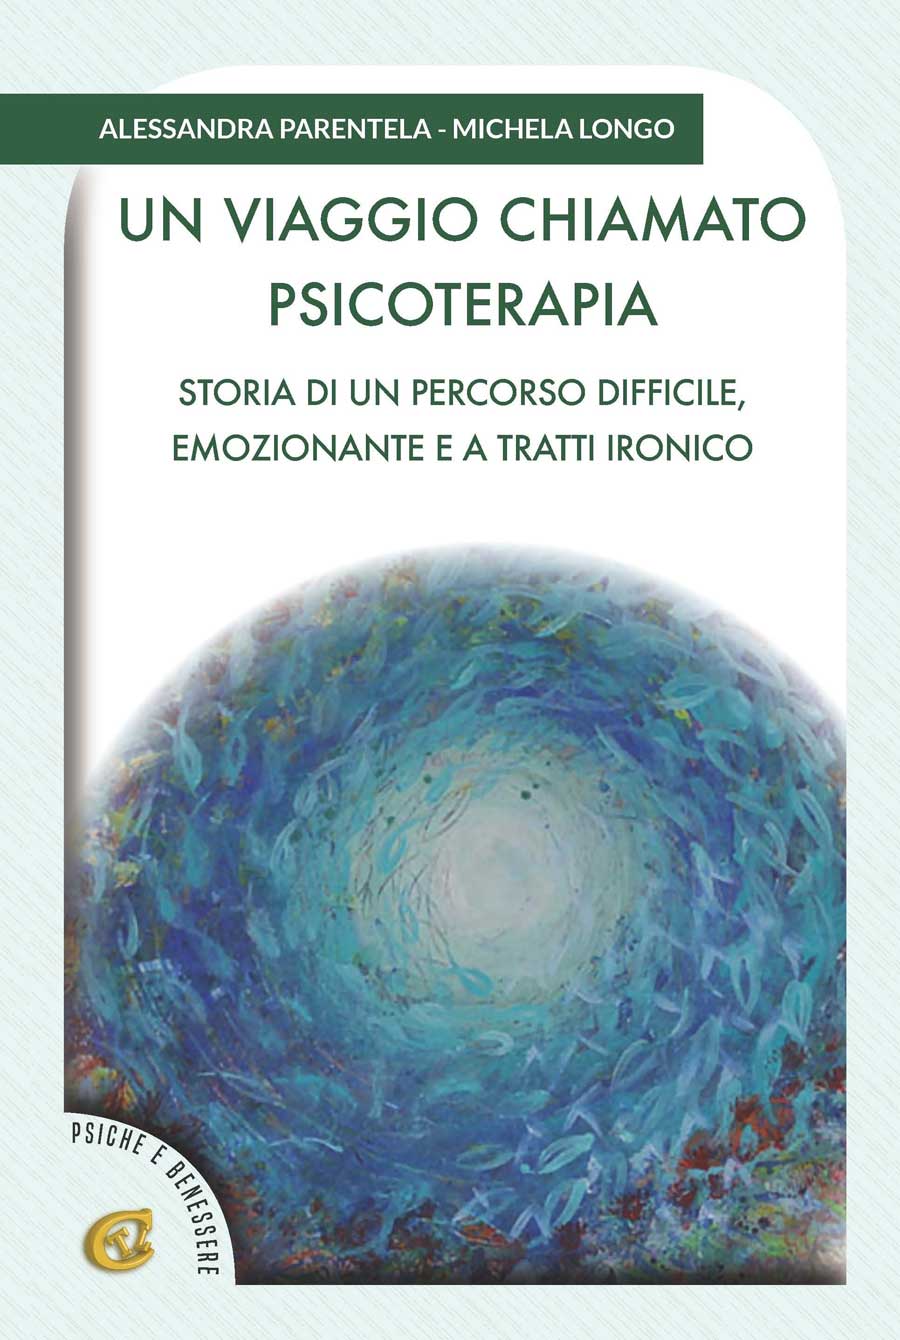 In libreria e negli store digitali “Un Viaggio Chiamato Psicoterapia”, il nuovo libro di Alessandra Parentela e Michela Longo